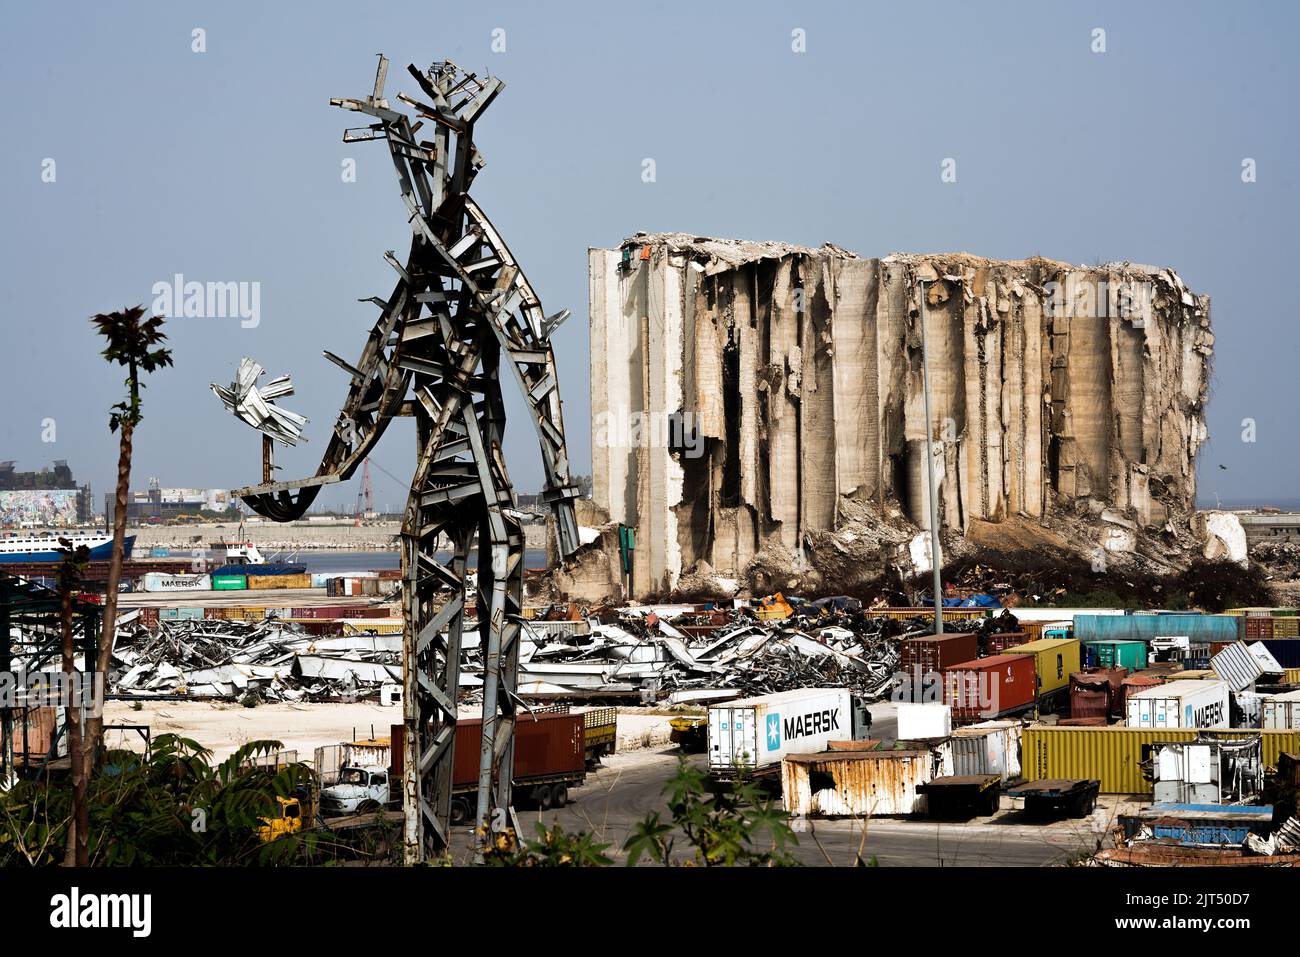 Beirut, Libano: Di fronte ai sili di grano distrutti si trova la scultura in acciaio dell'artista Nadim Karam che commemora le vittime della letale esplosione del 4 agosto 2020, fatta dai rottami metallici della massiccia esplosione di 2.750 tonnellate di nitrato di ammonio immagazzinato nel porto. Foto Stock